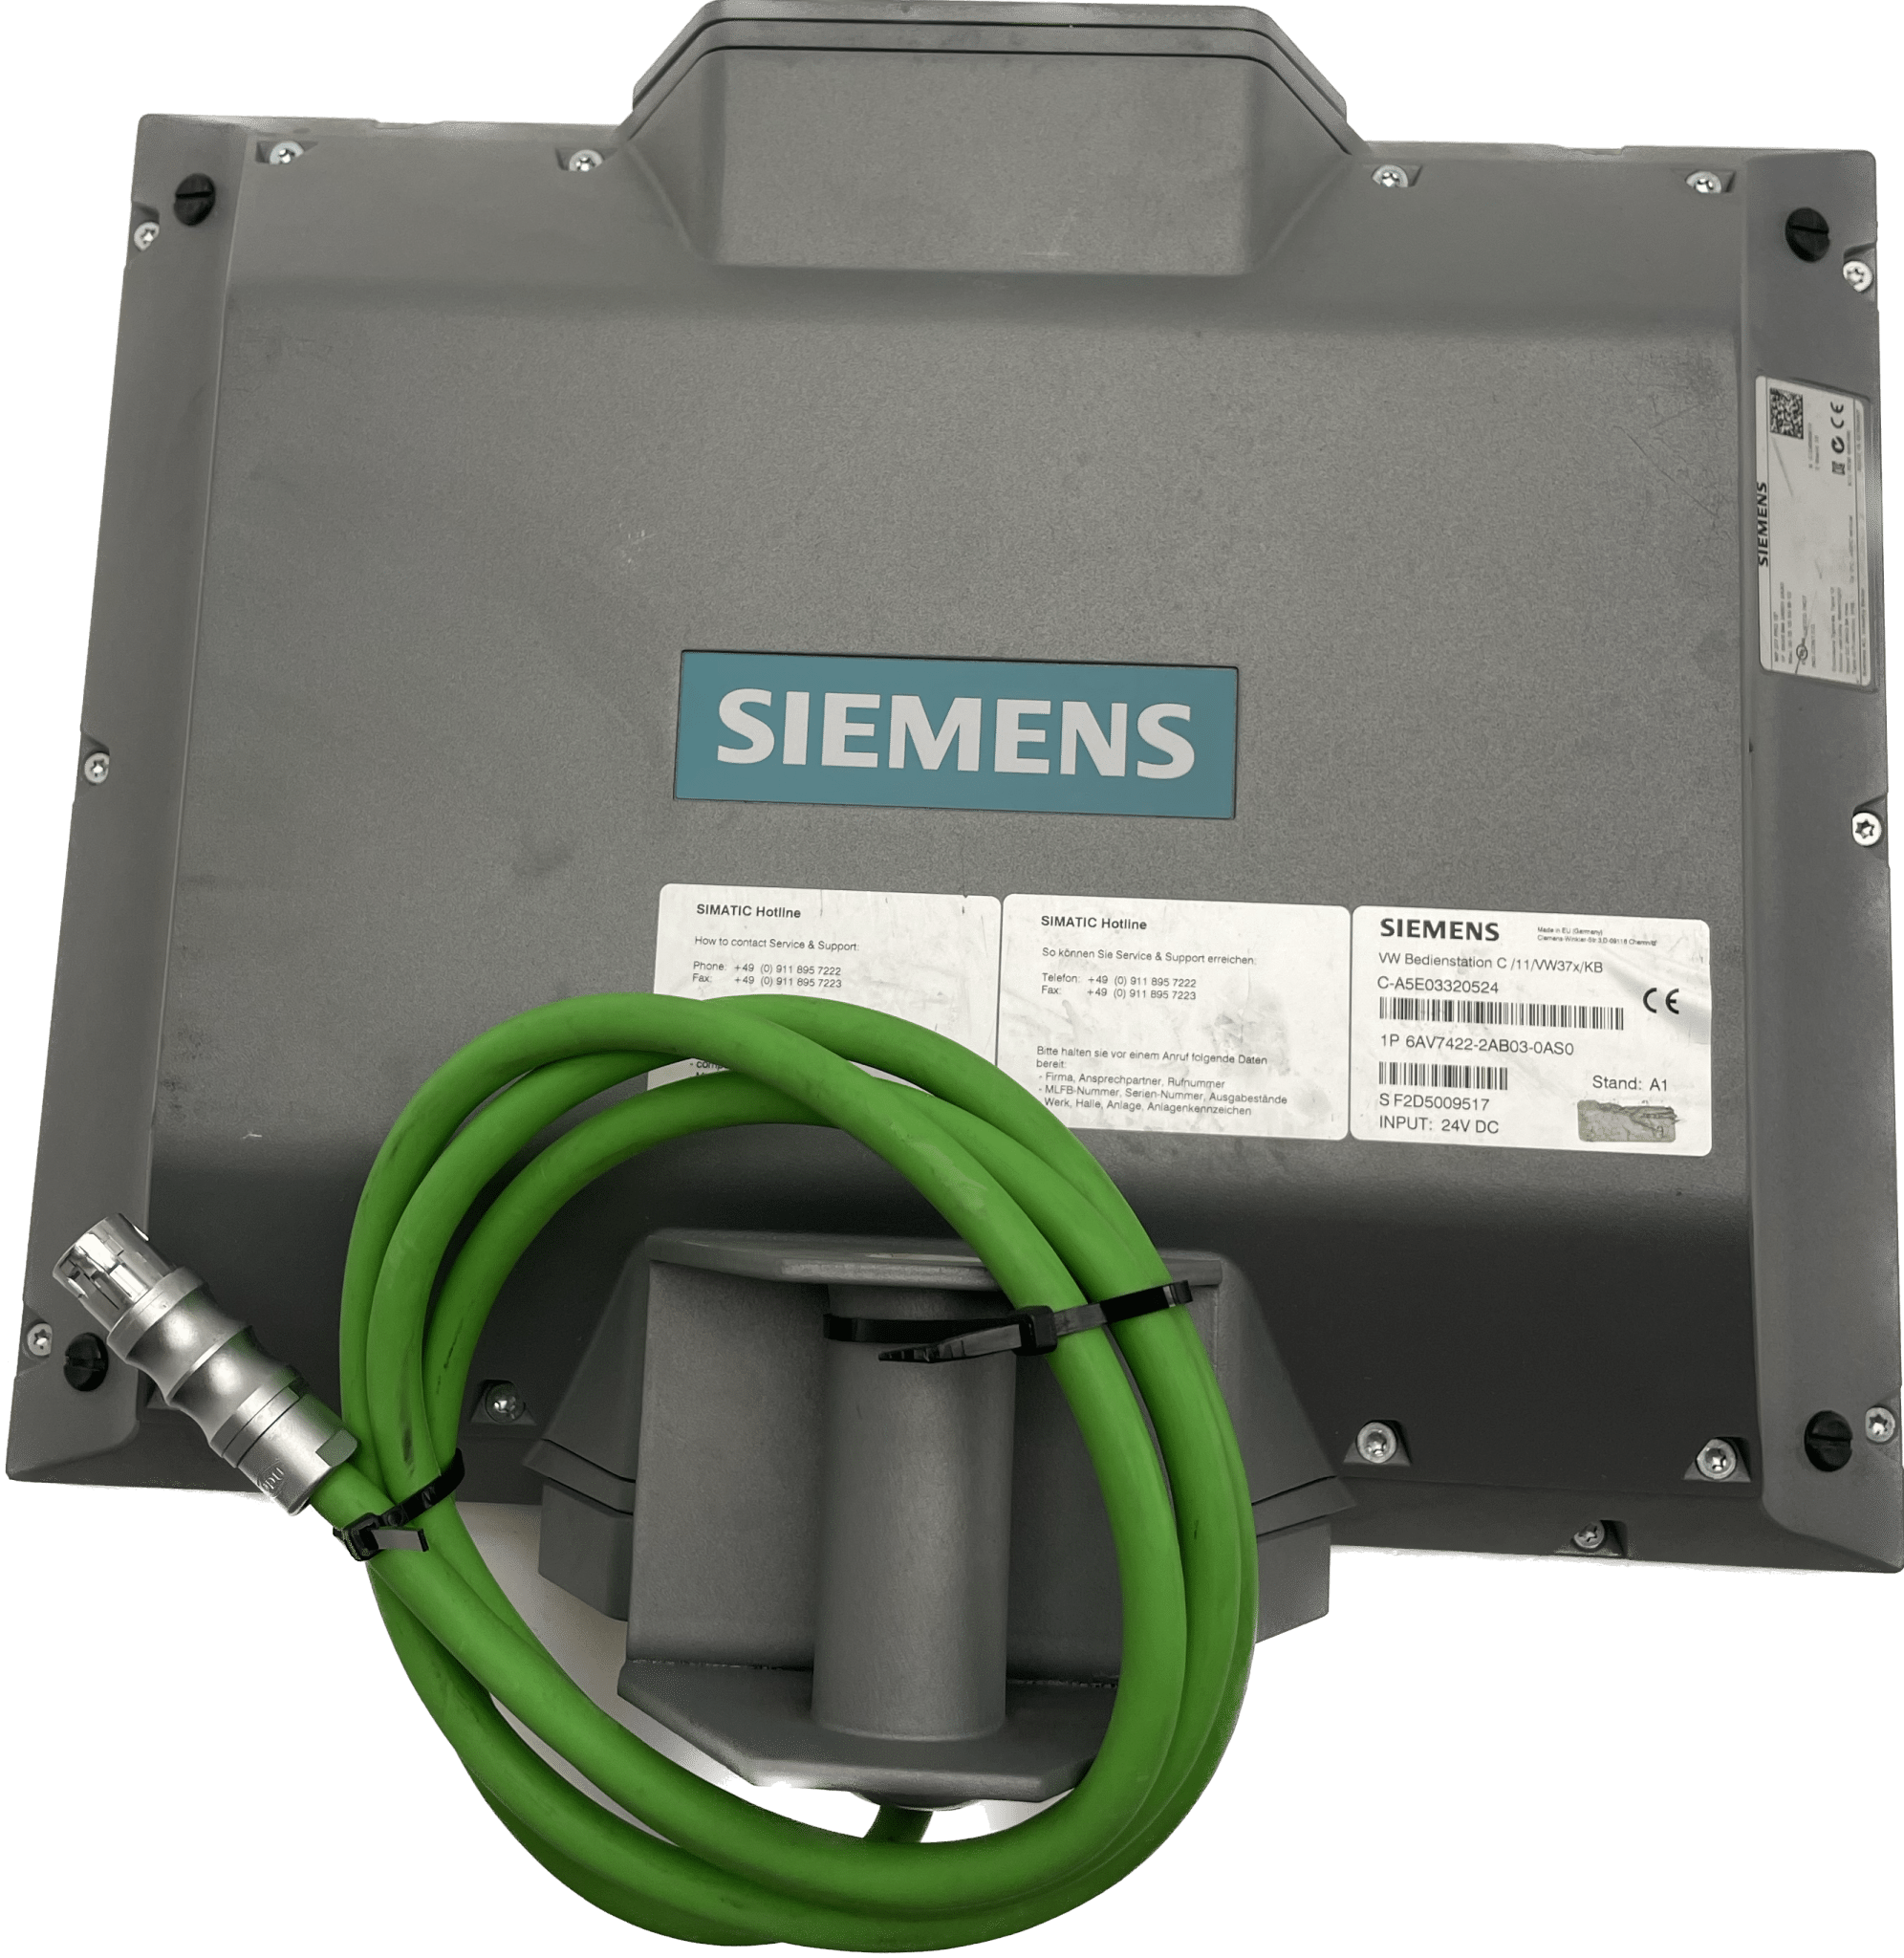 Siemens 6AV7422-2BA03-0AS0 - #product_category# | Klenk Maschinenhandel